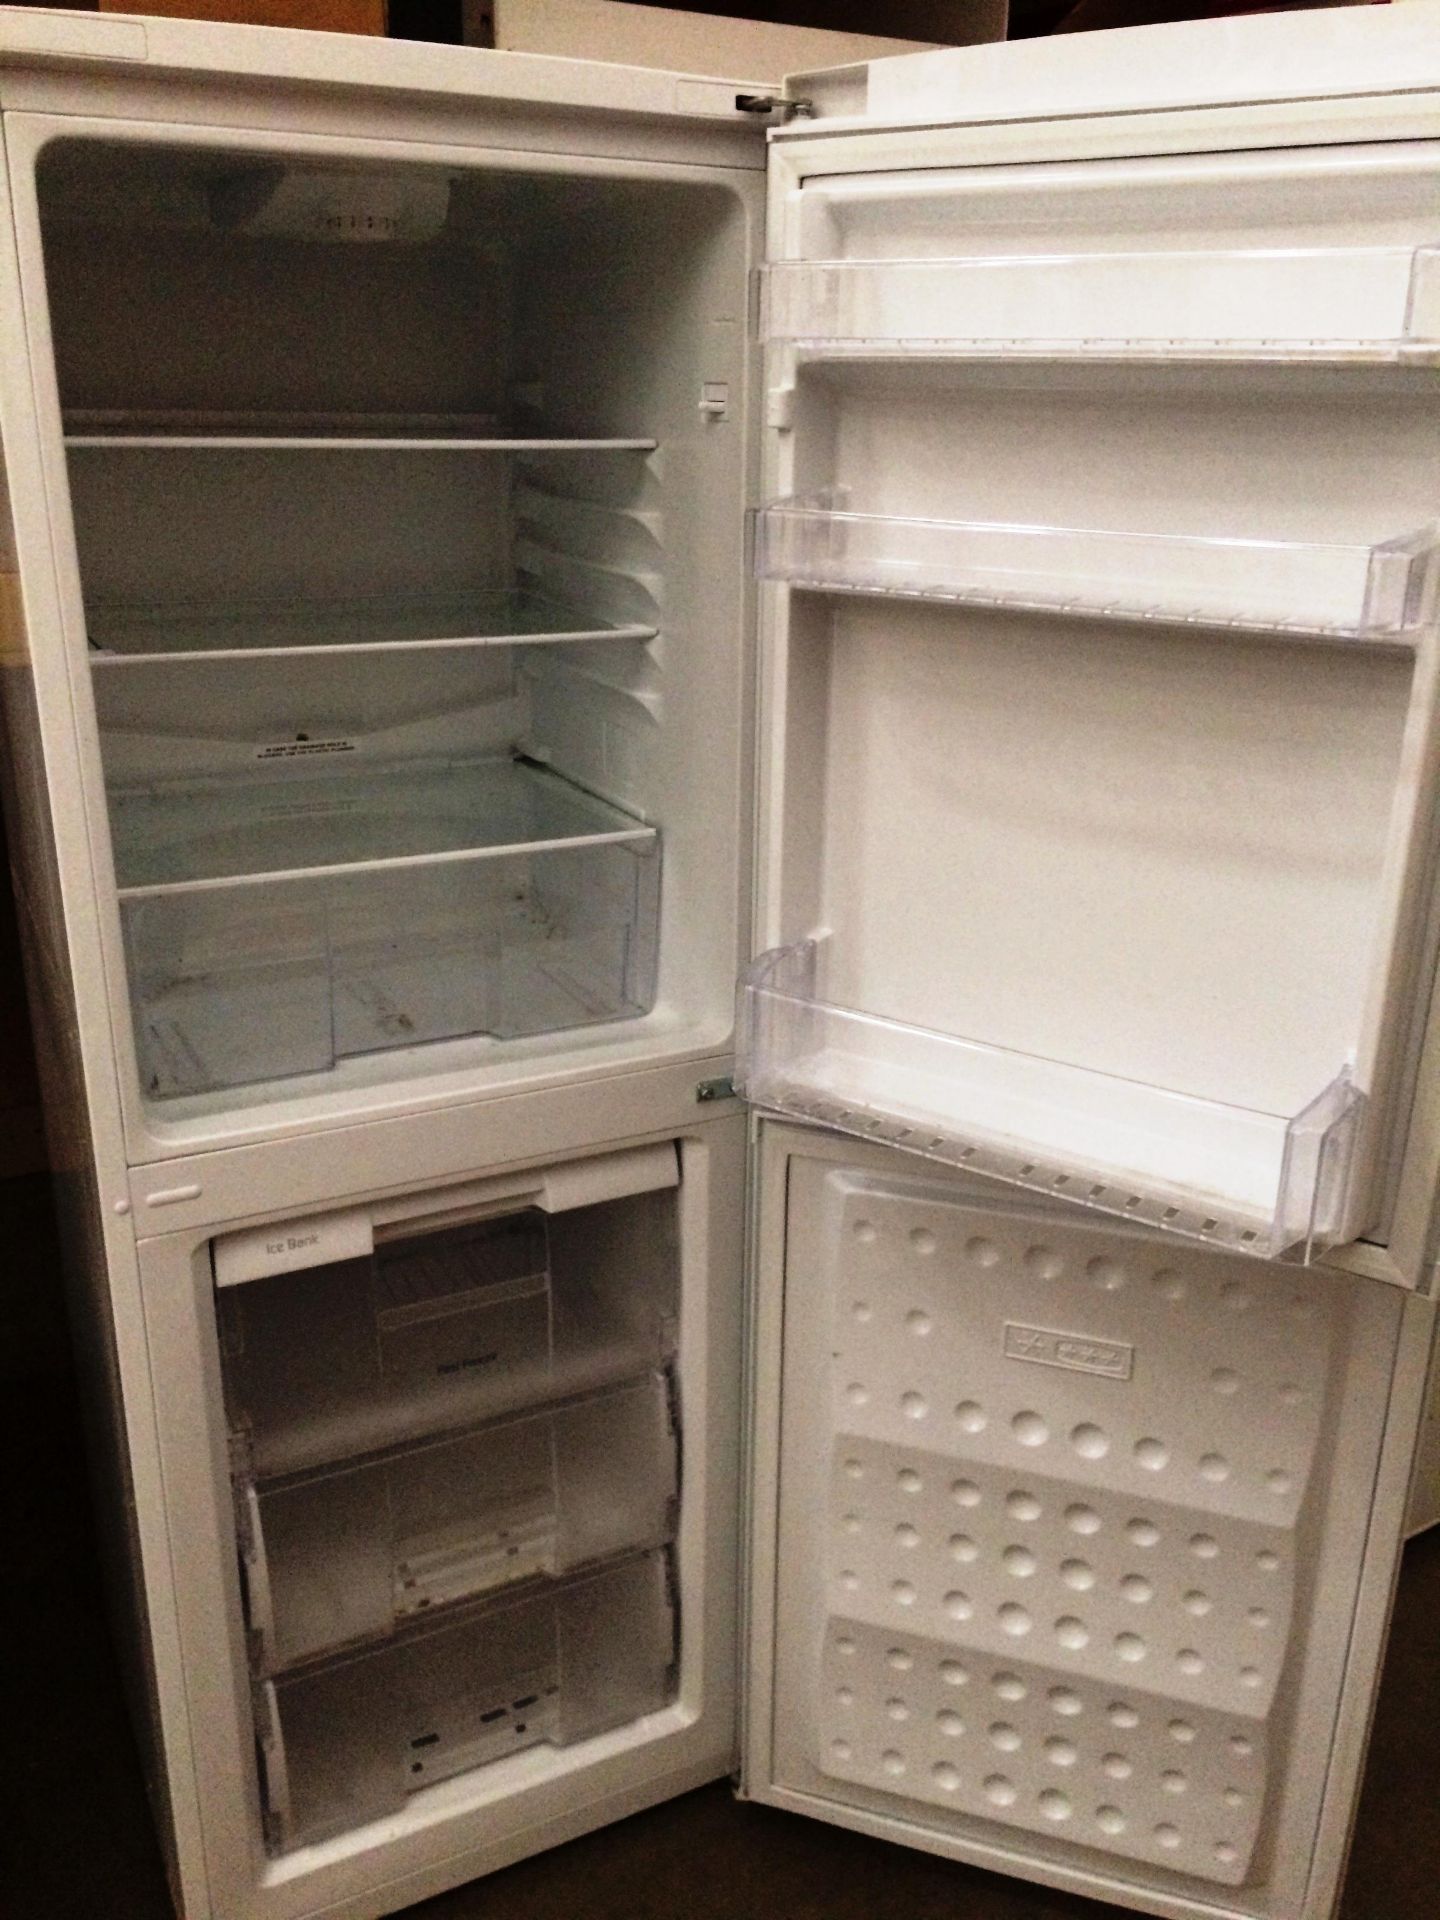 A Beko EFC81823W A+ class frost free fridge freezer - Image 2 of 2